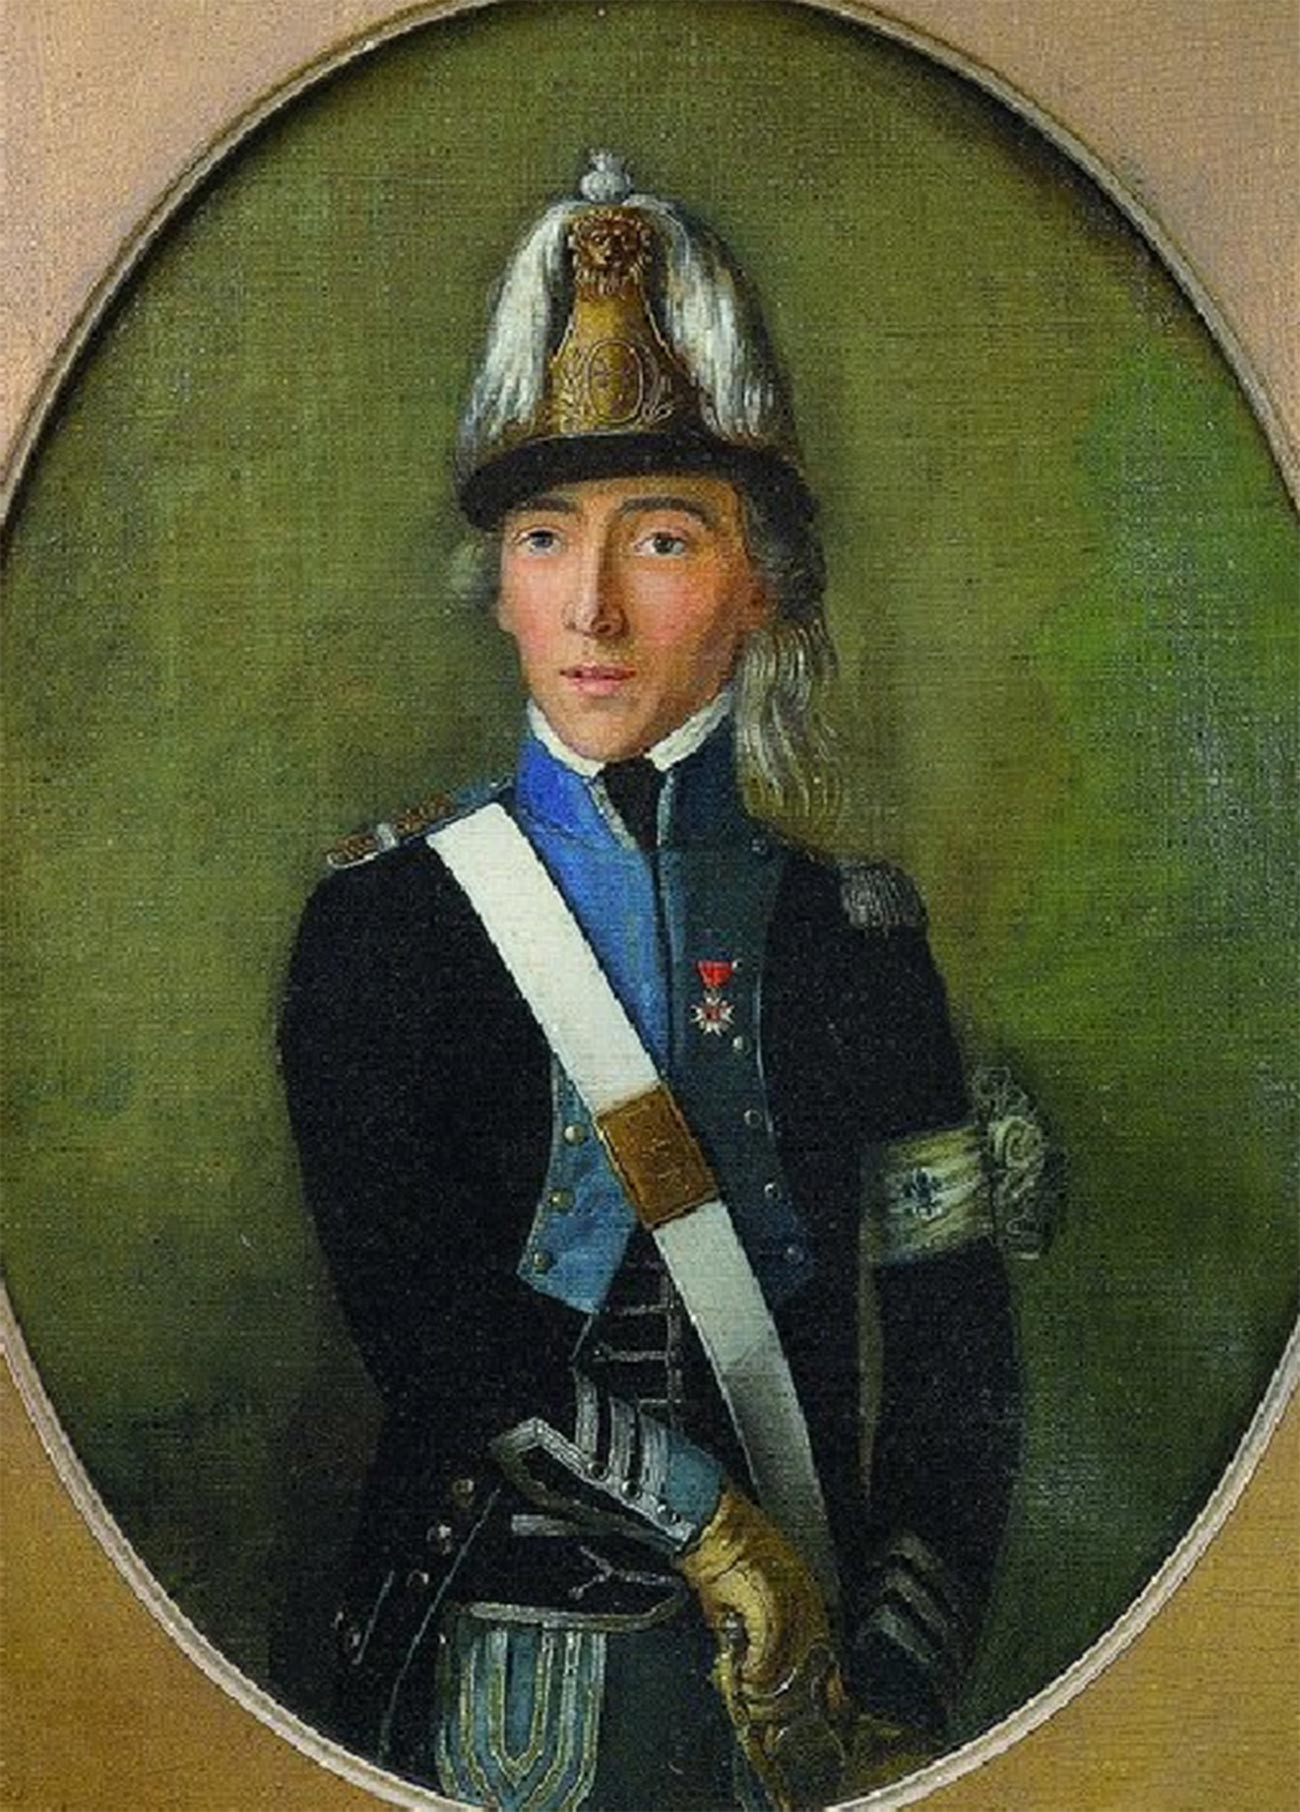 Kapten Korps Royalis Emigran Condé.